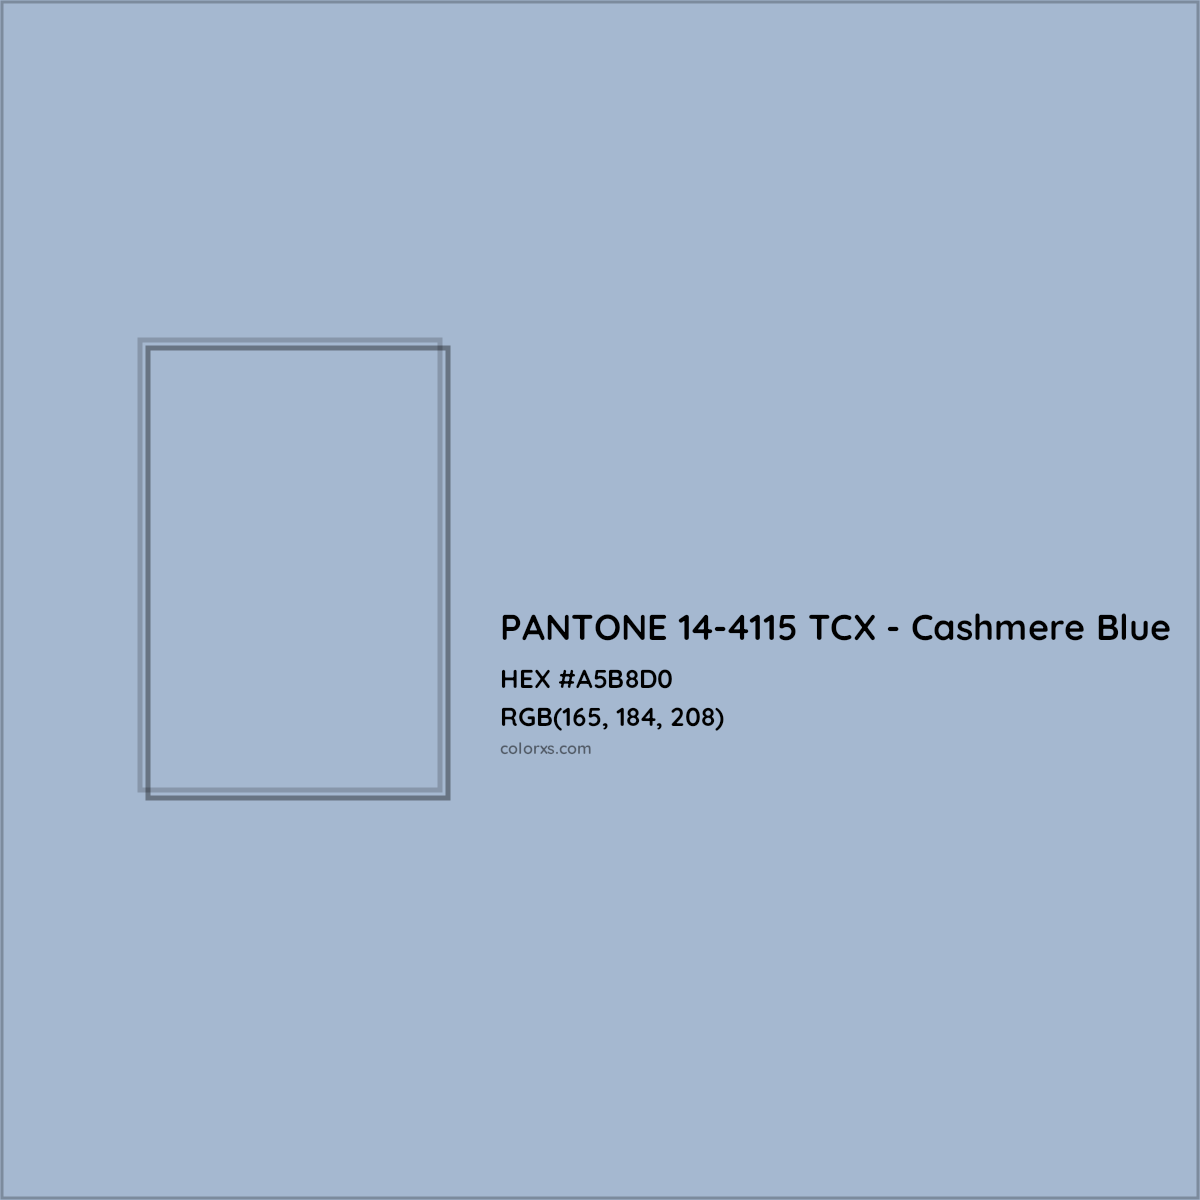 HEX #A5B8D0 PANTONE 14-4115 TCX - Cashmere Blue CMS Pantone TCX - Color Code